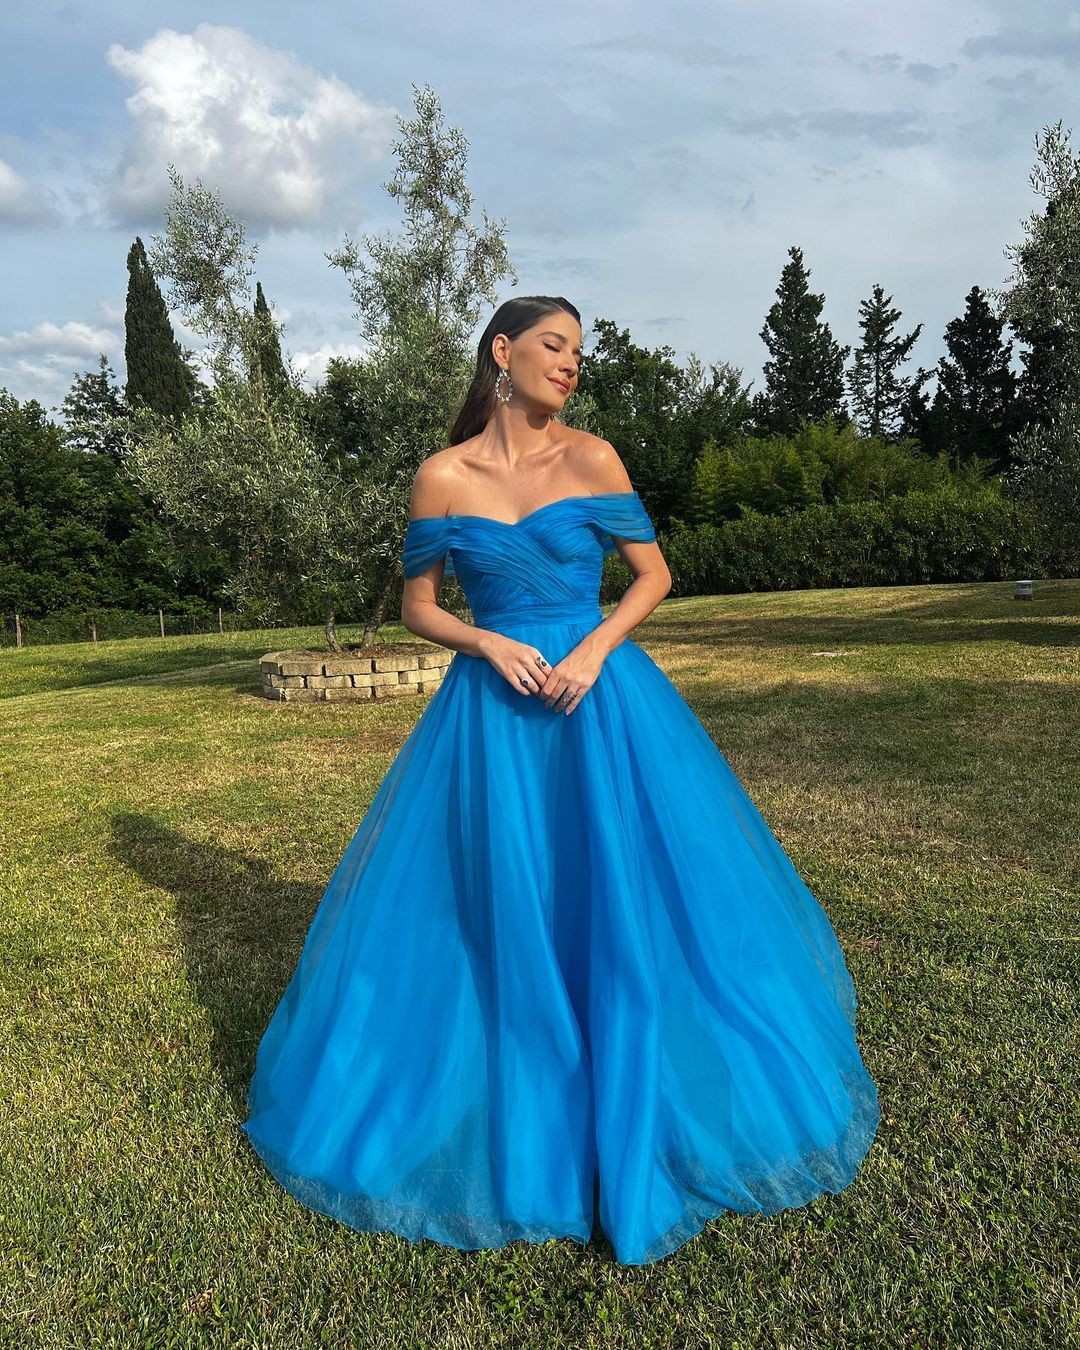 Luma Costa elegeu um vestido azul tomara que caia (Foto: Reprodução/Instagram)